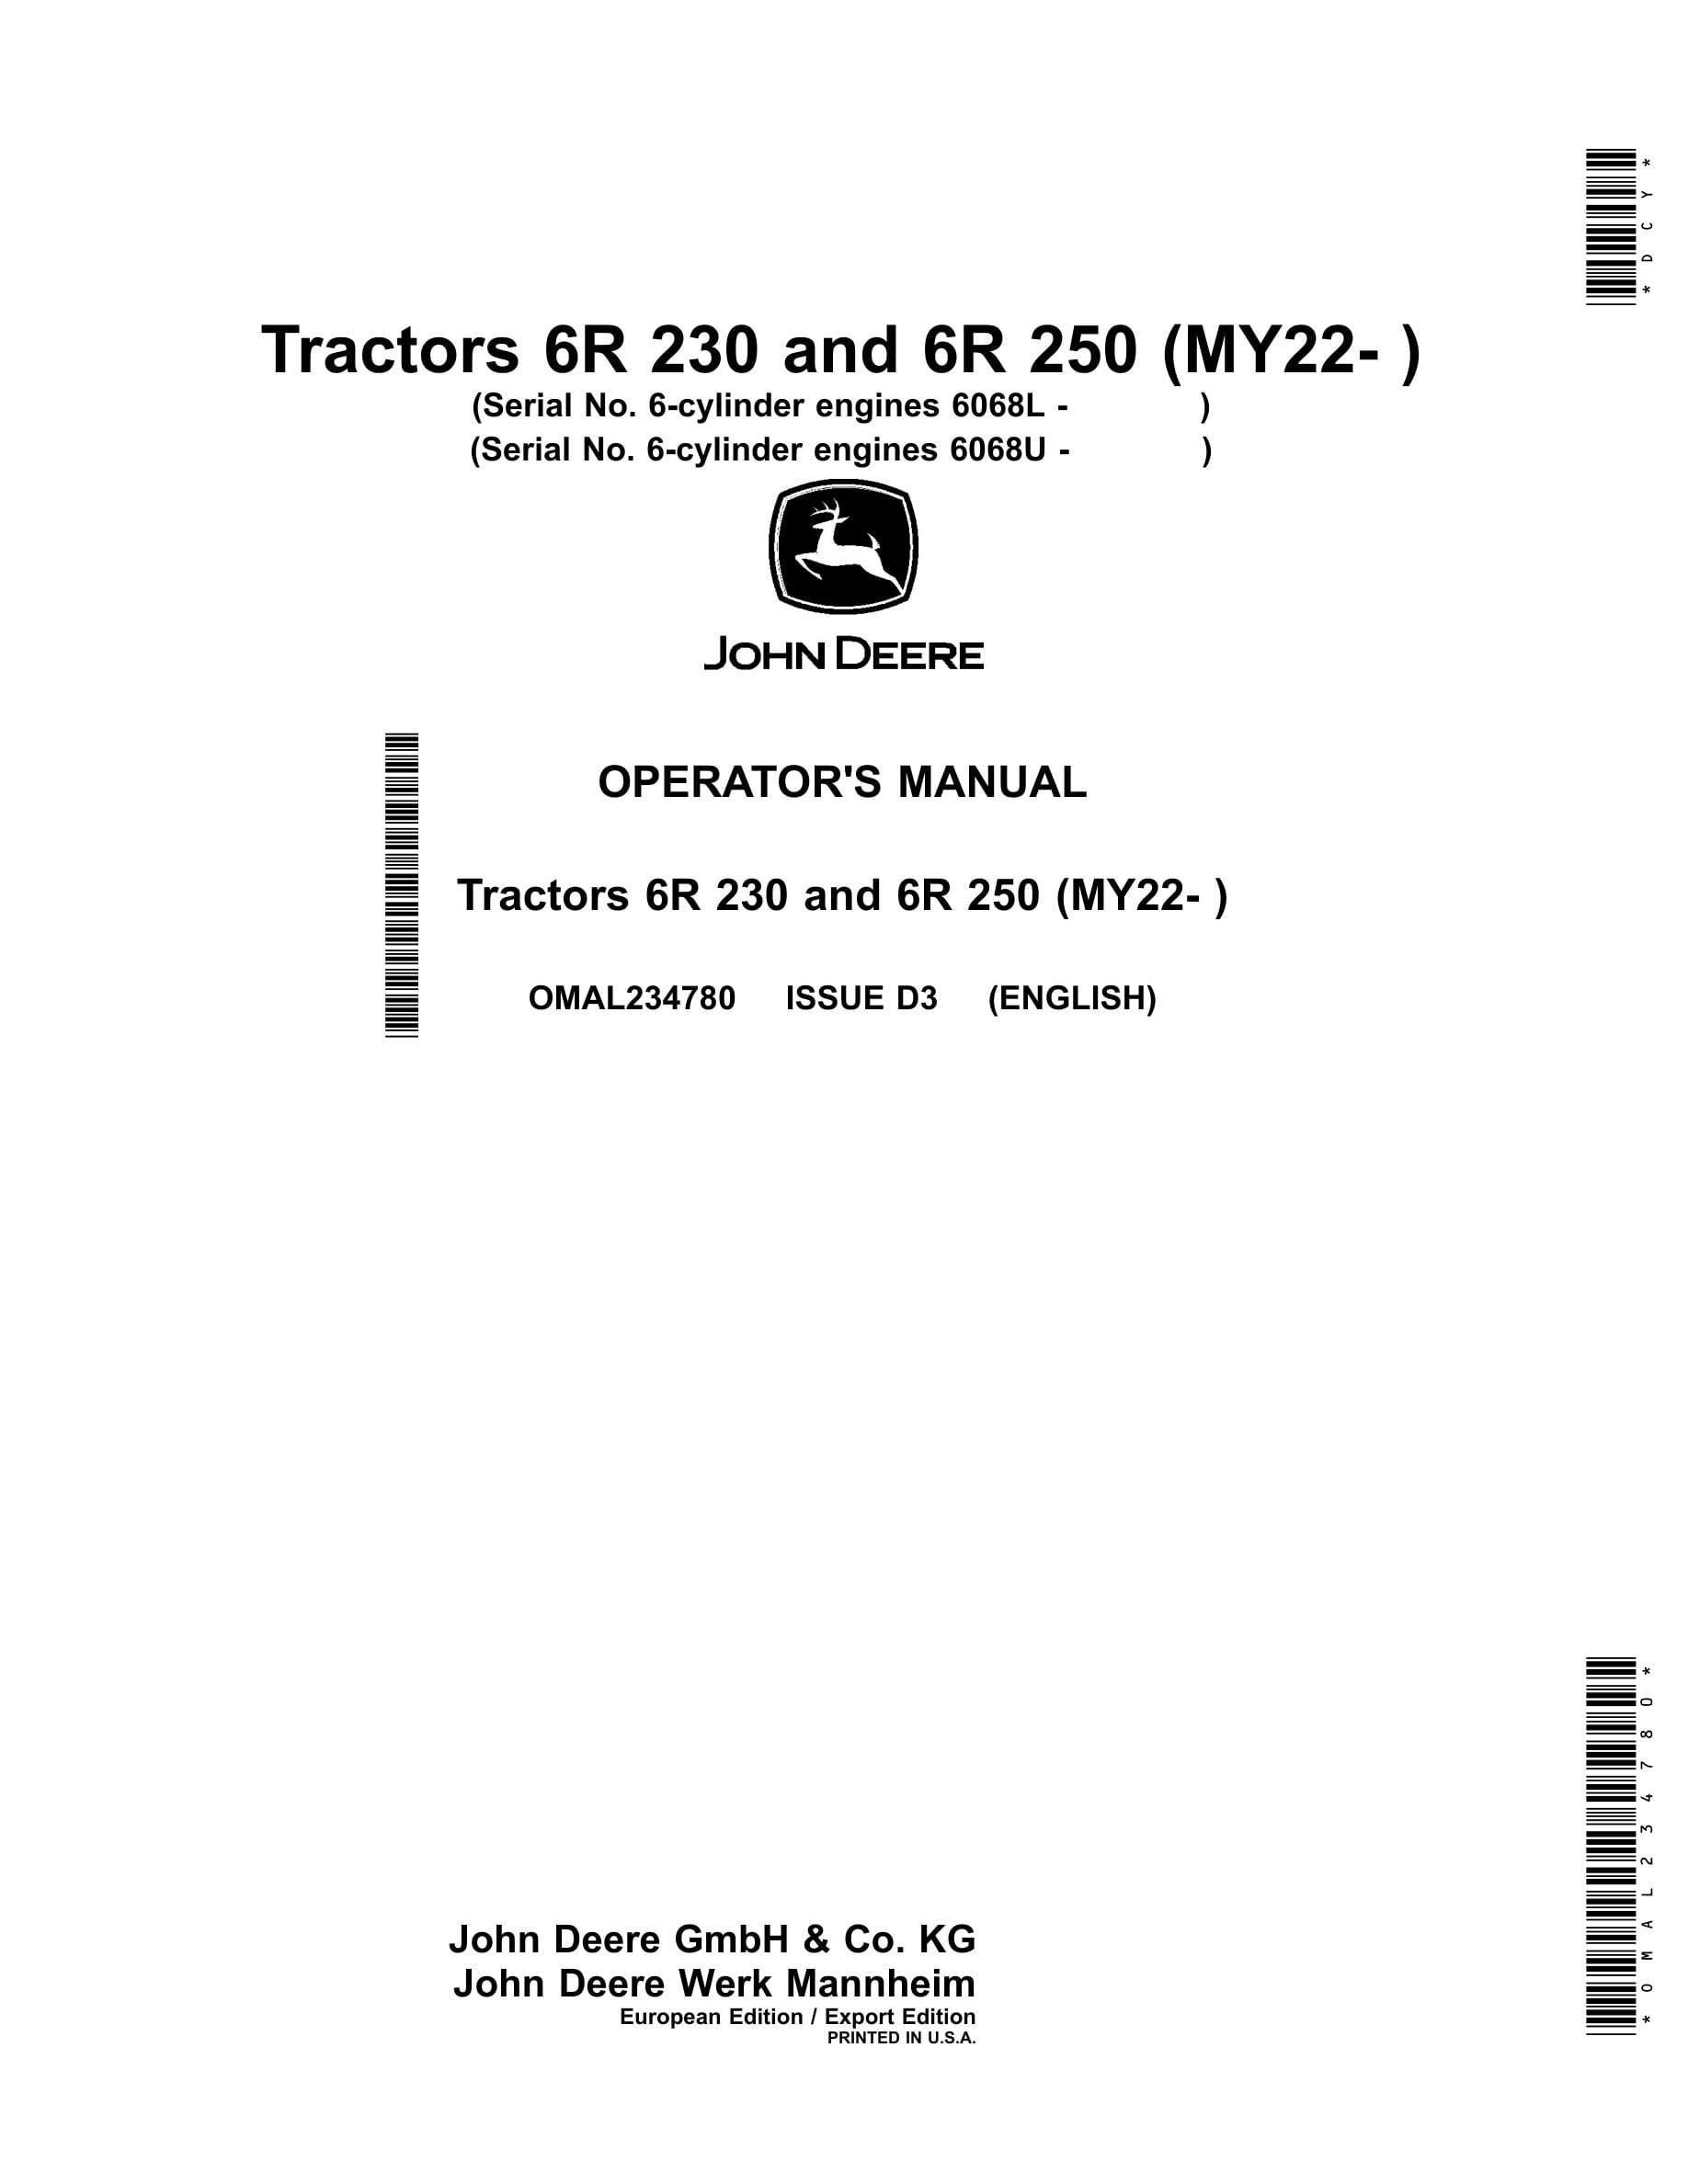 John Deere 6r 230 And 6r 250 (my22- ) Tractors Operator Manuals OMAL234780-1